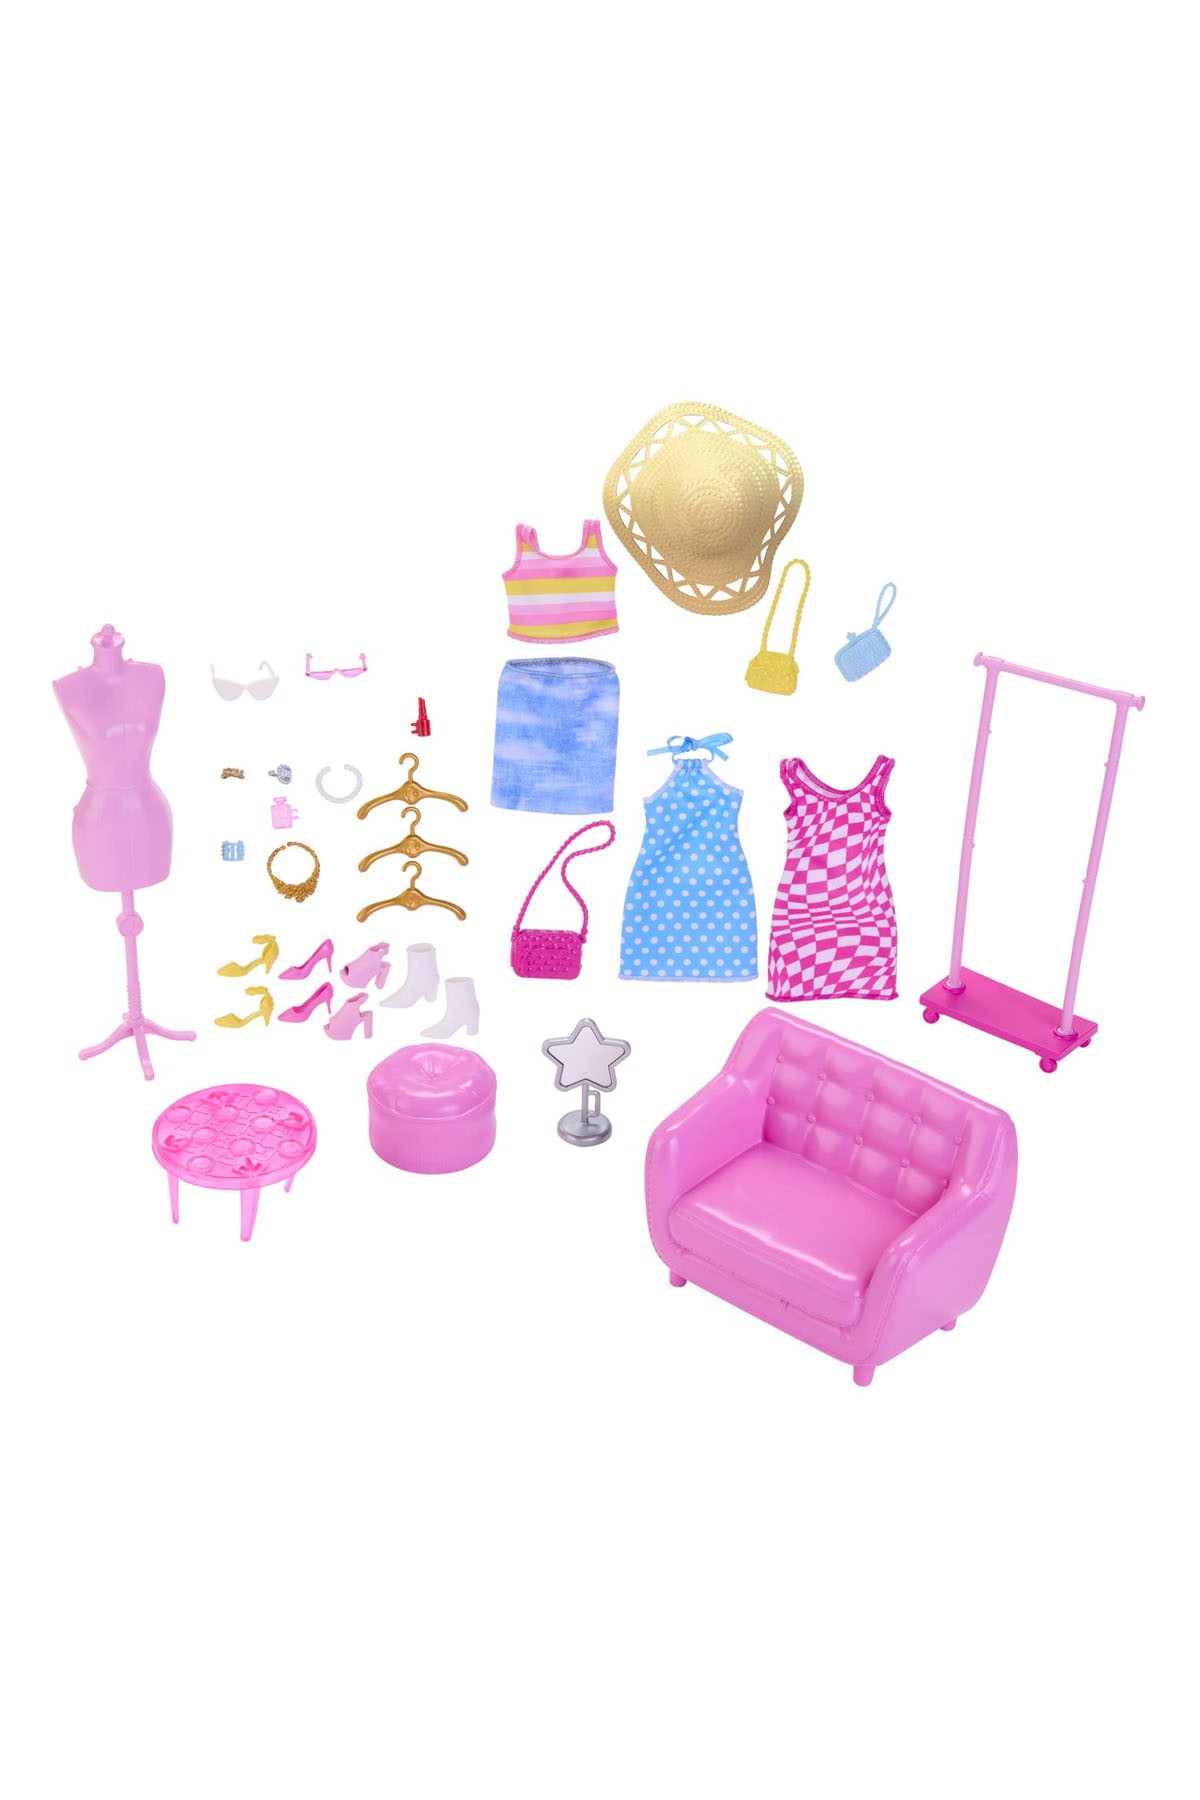 Barbie'nin Kıyafet ve Aksesuar Askısı Oyun Seti